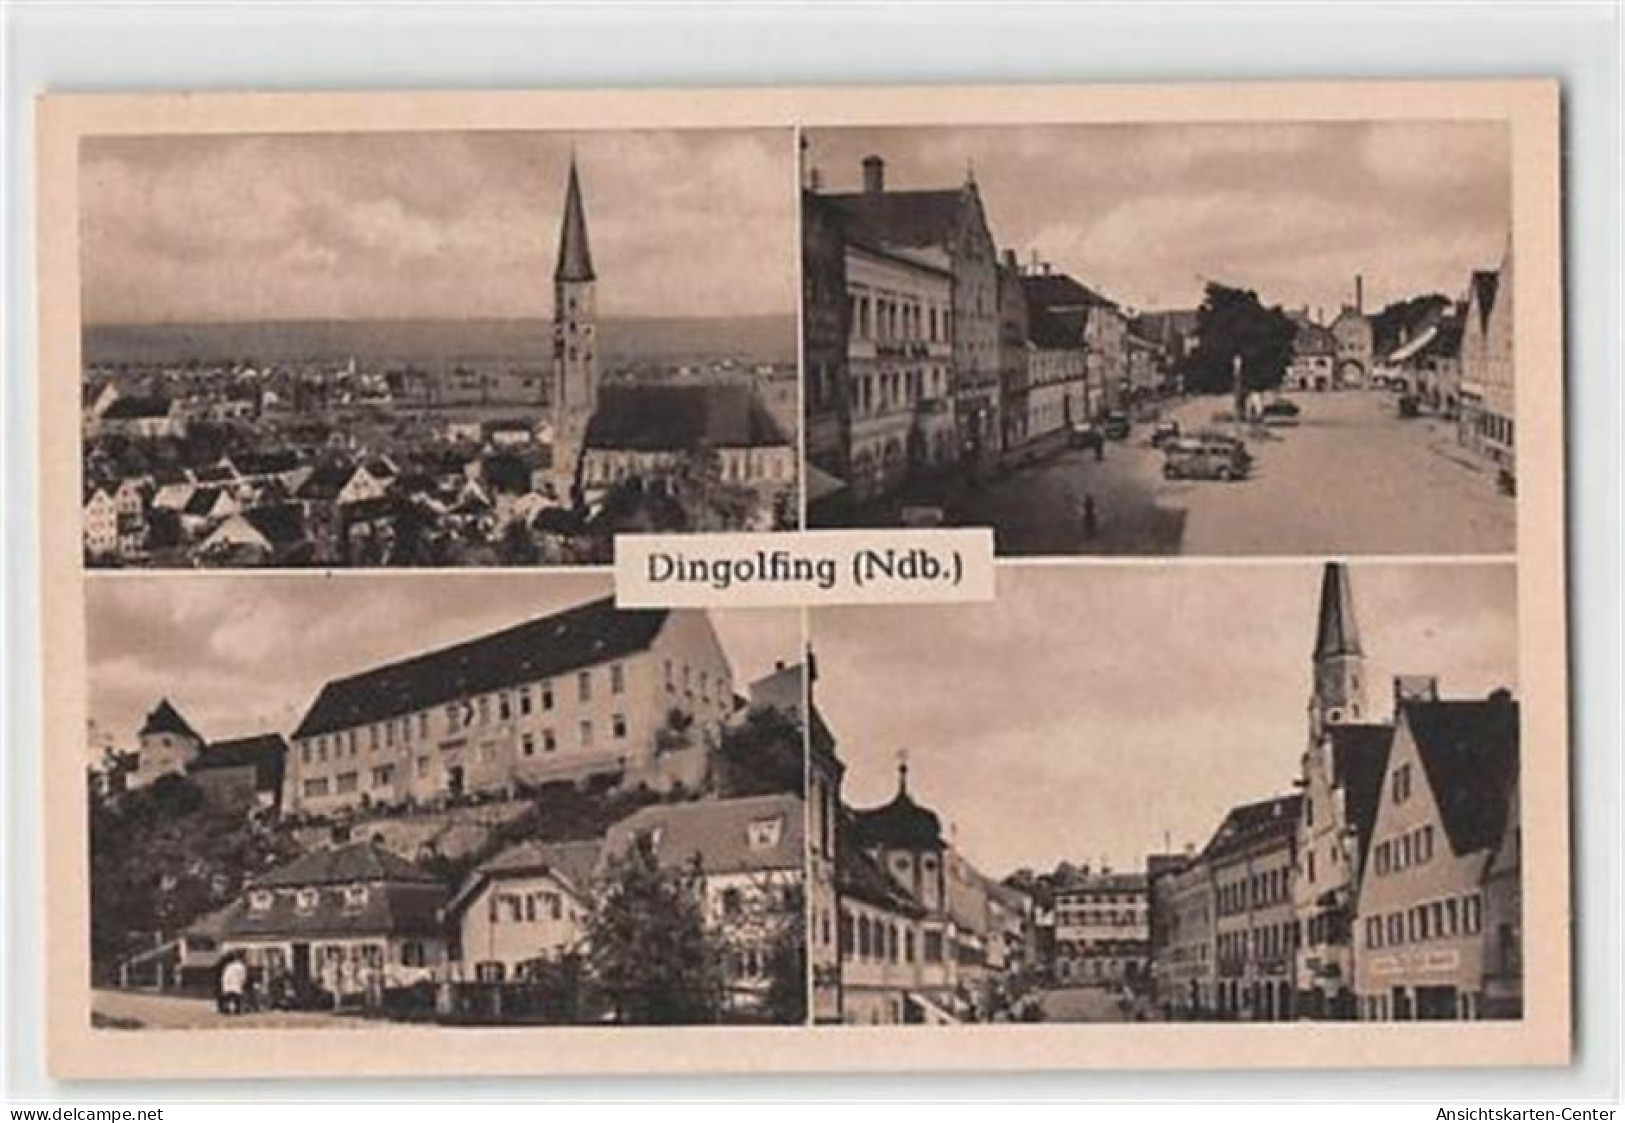 39114805 - Dingolfing, Niederbayern Mit Marienplatz Und Blick Auf Die Kirche Ungelaufen  Top Erhaltung. - Vilsbiburg